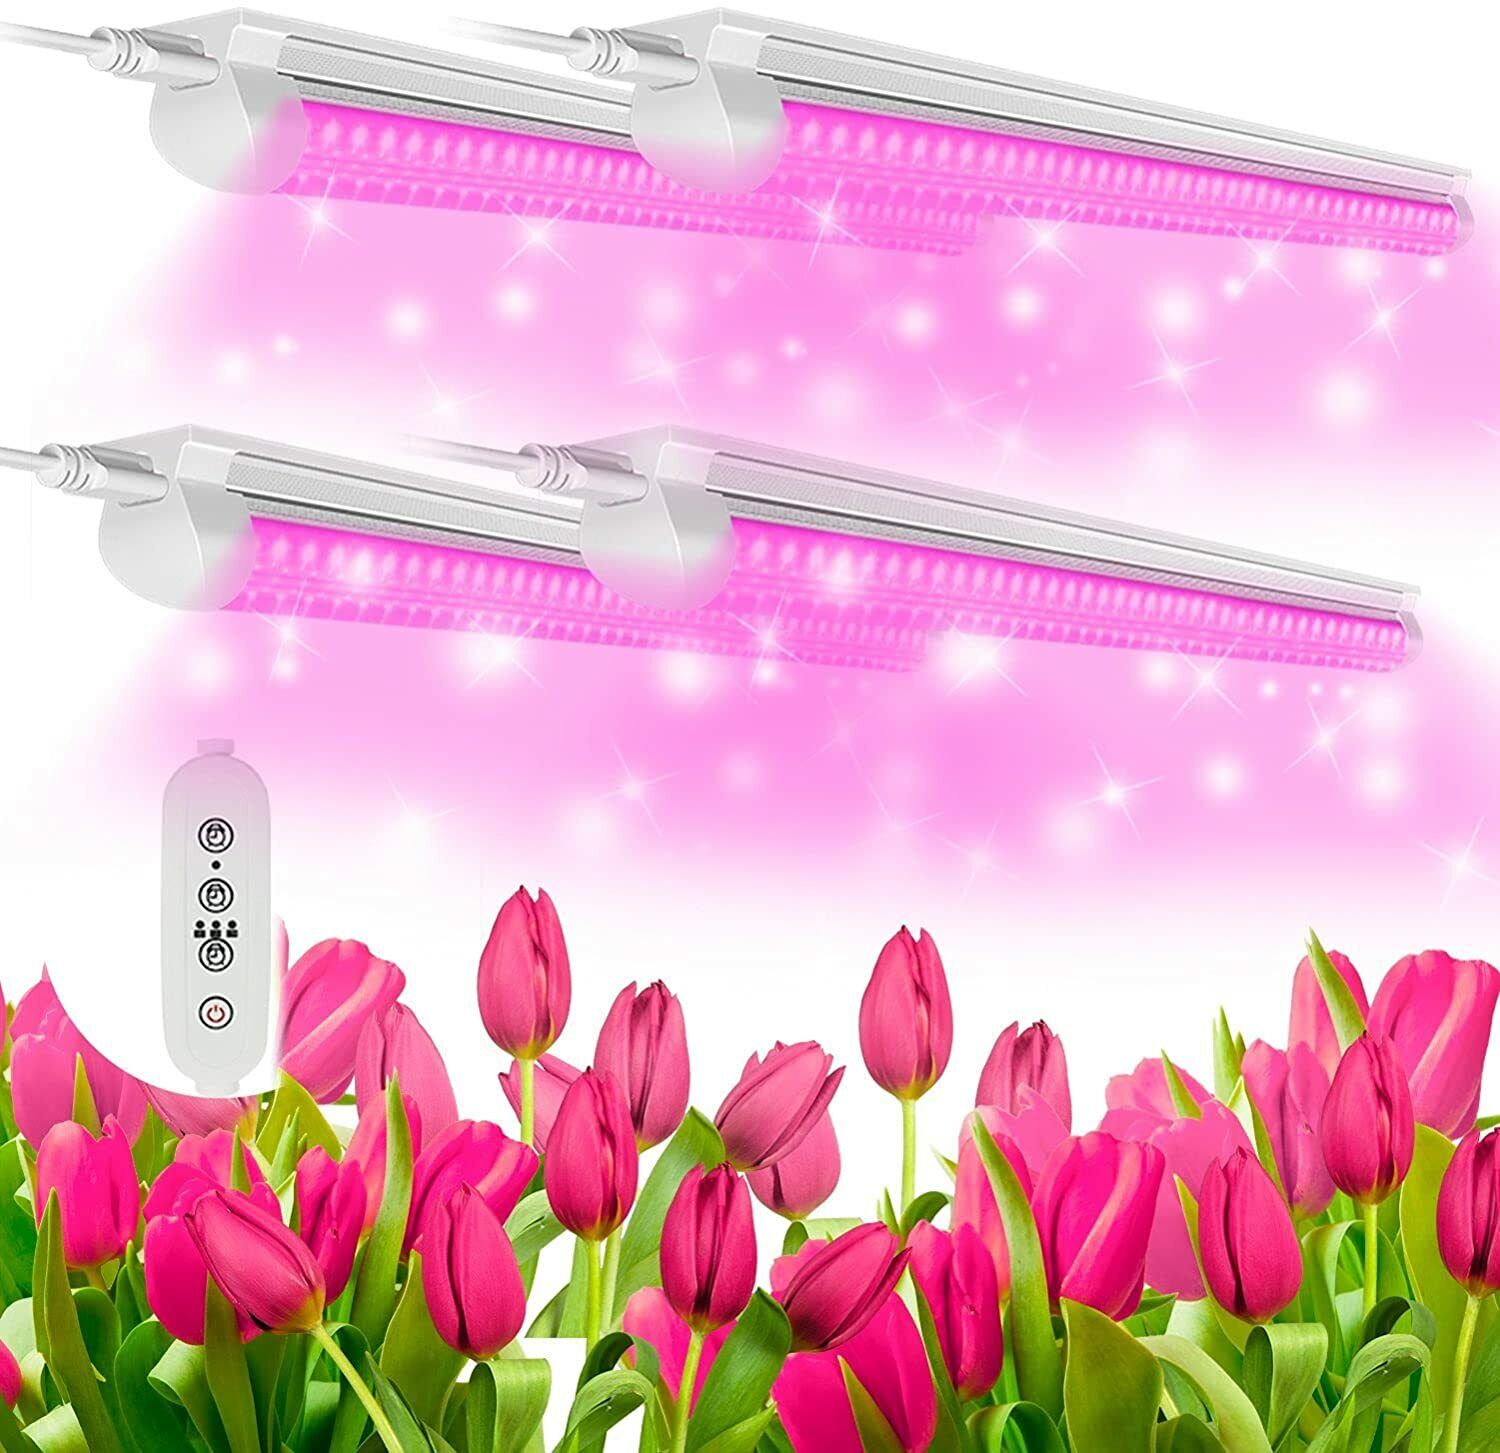 4 Pack 20W LED Grow Lights Full Spectrum T8 2FT LED Plant Light Linkable Fixture